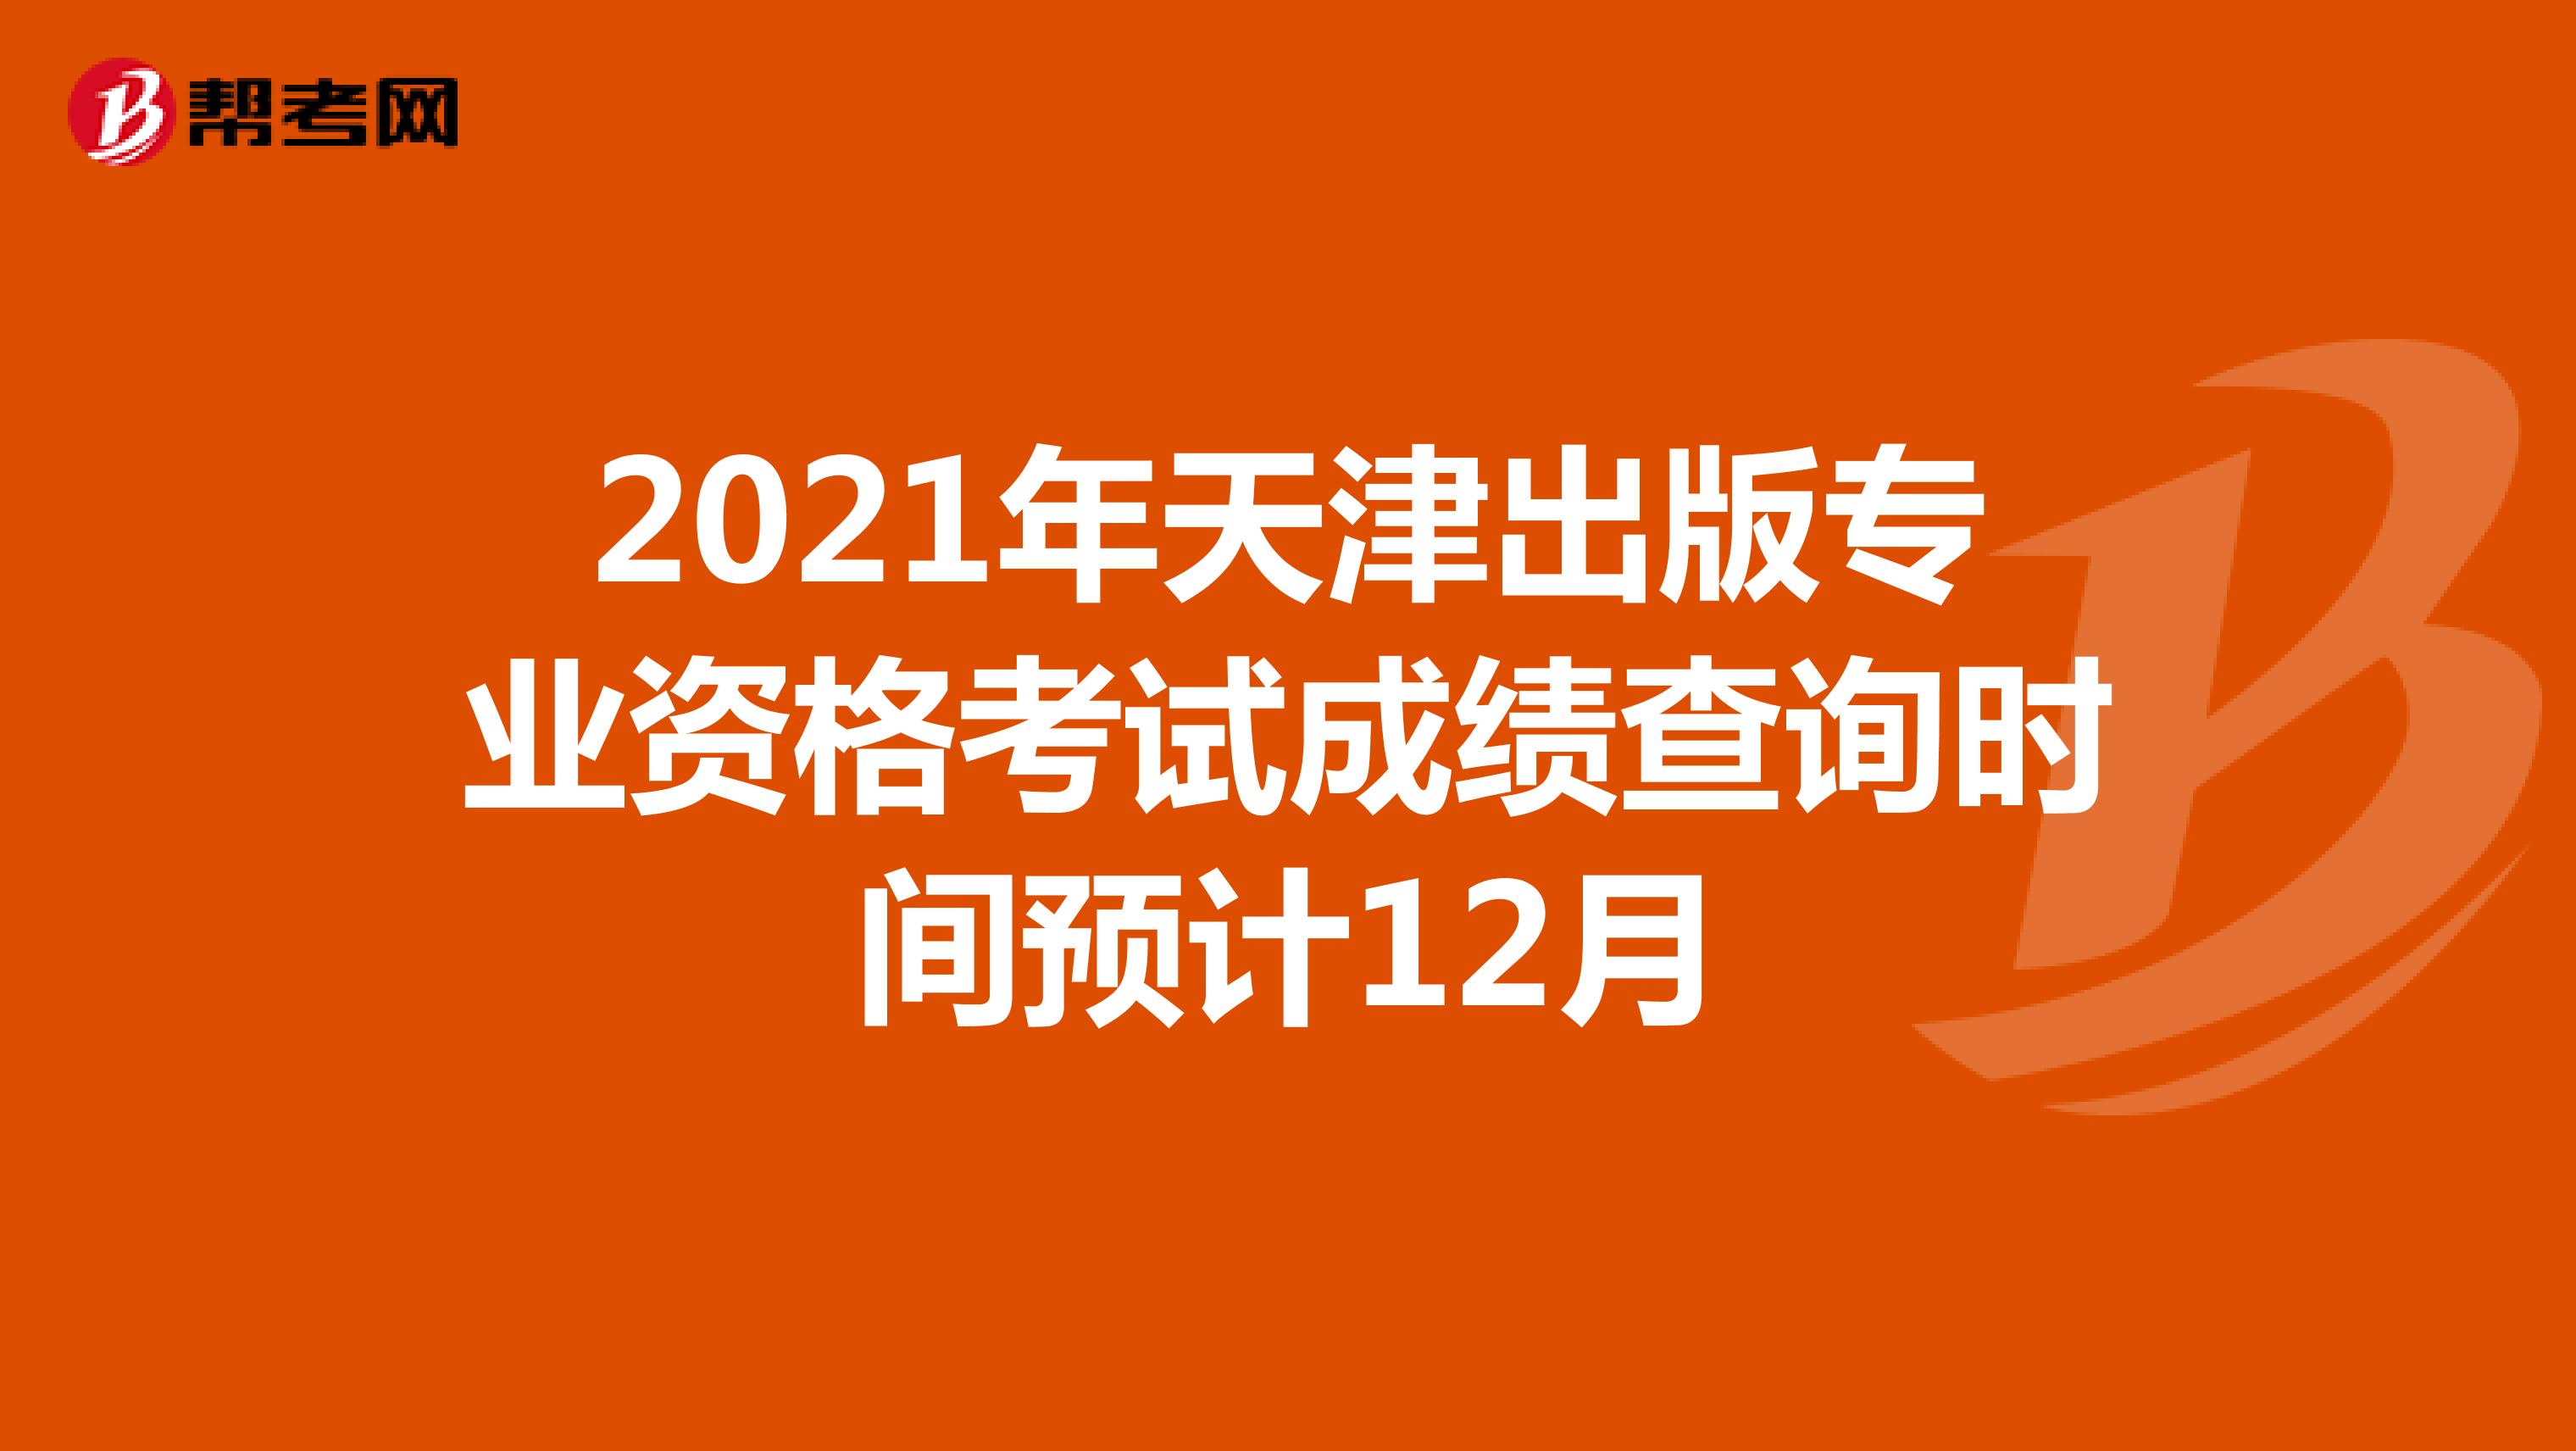 2021年天津出版专业资格考试成绩查询时间预计12月